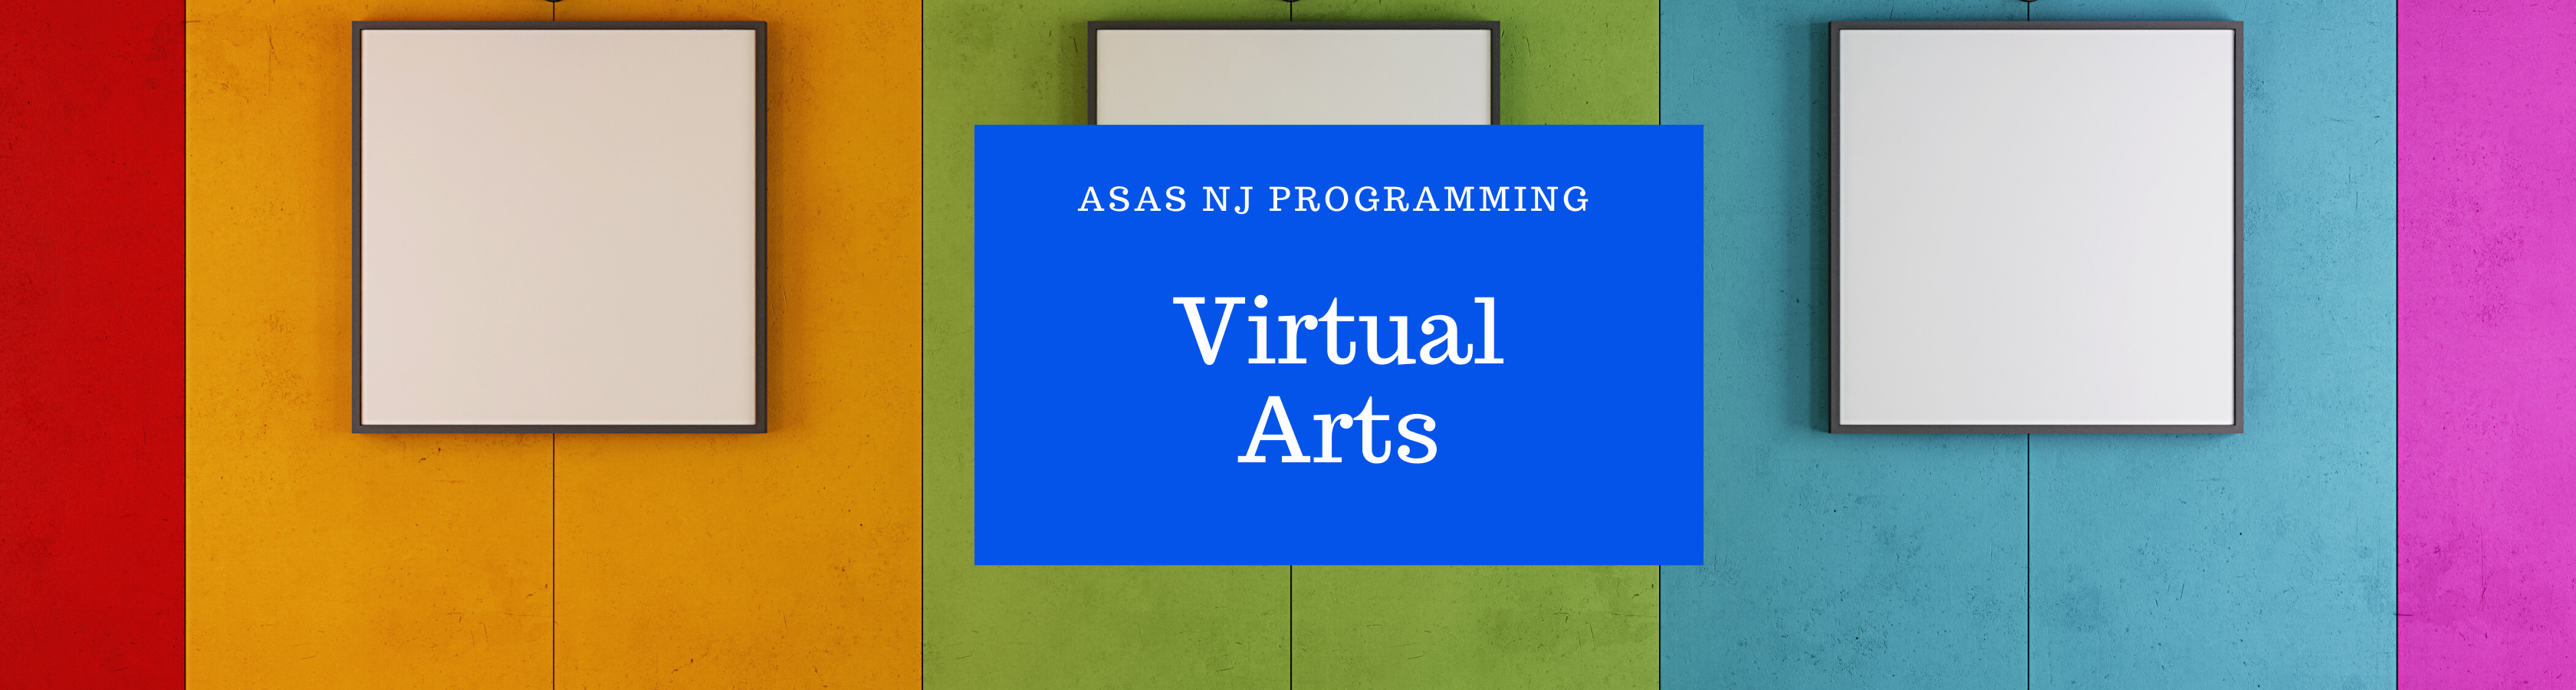 Virtual Arts 2